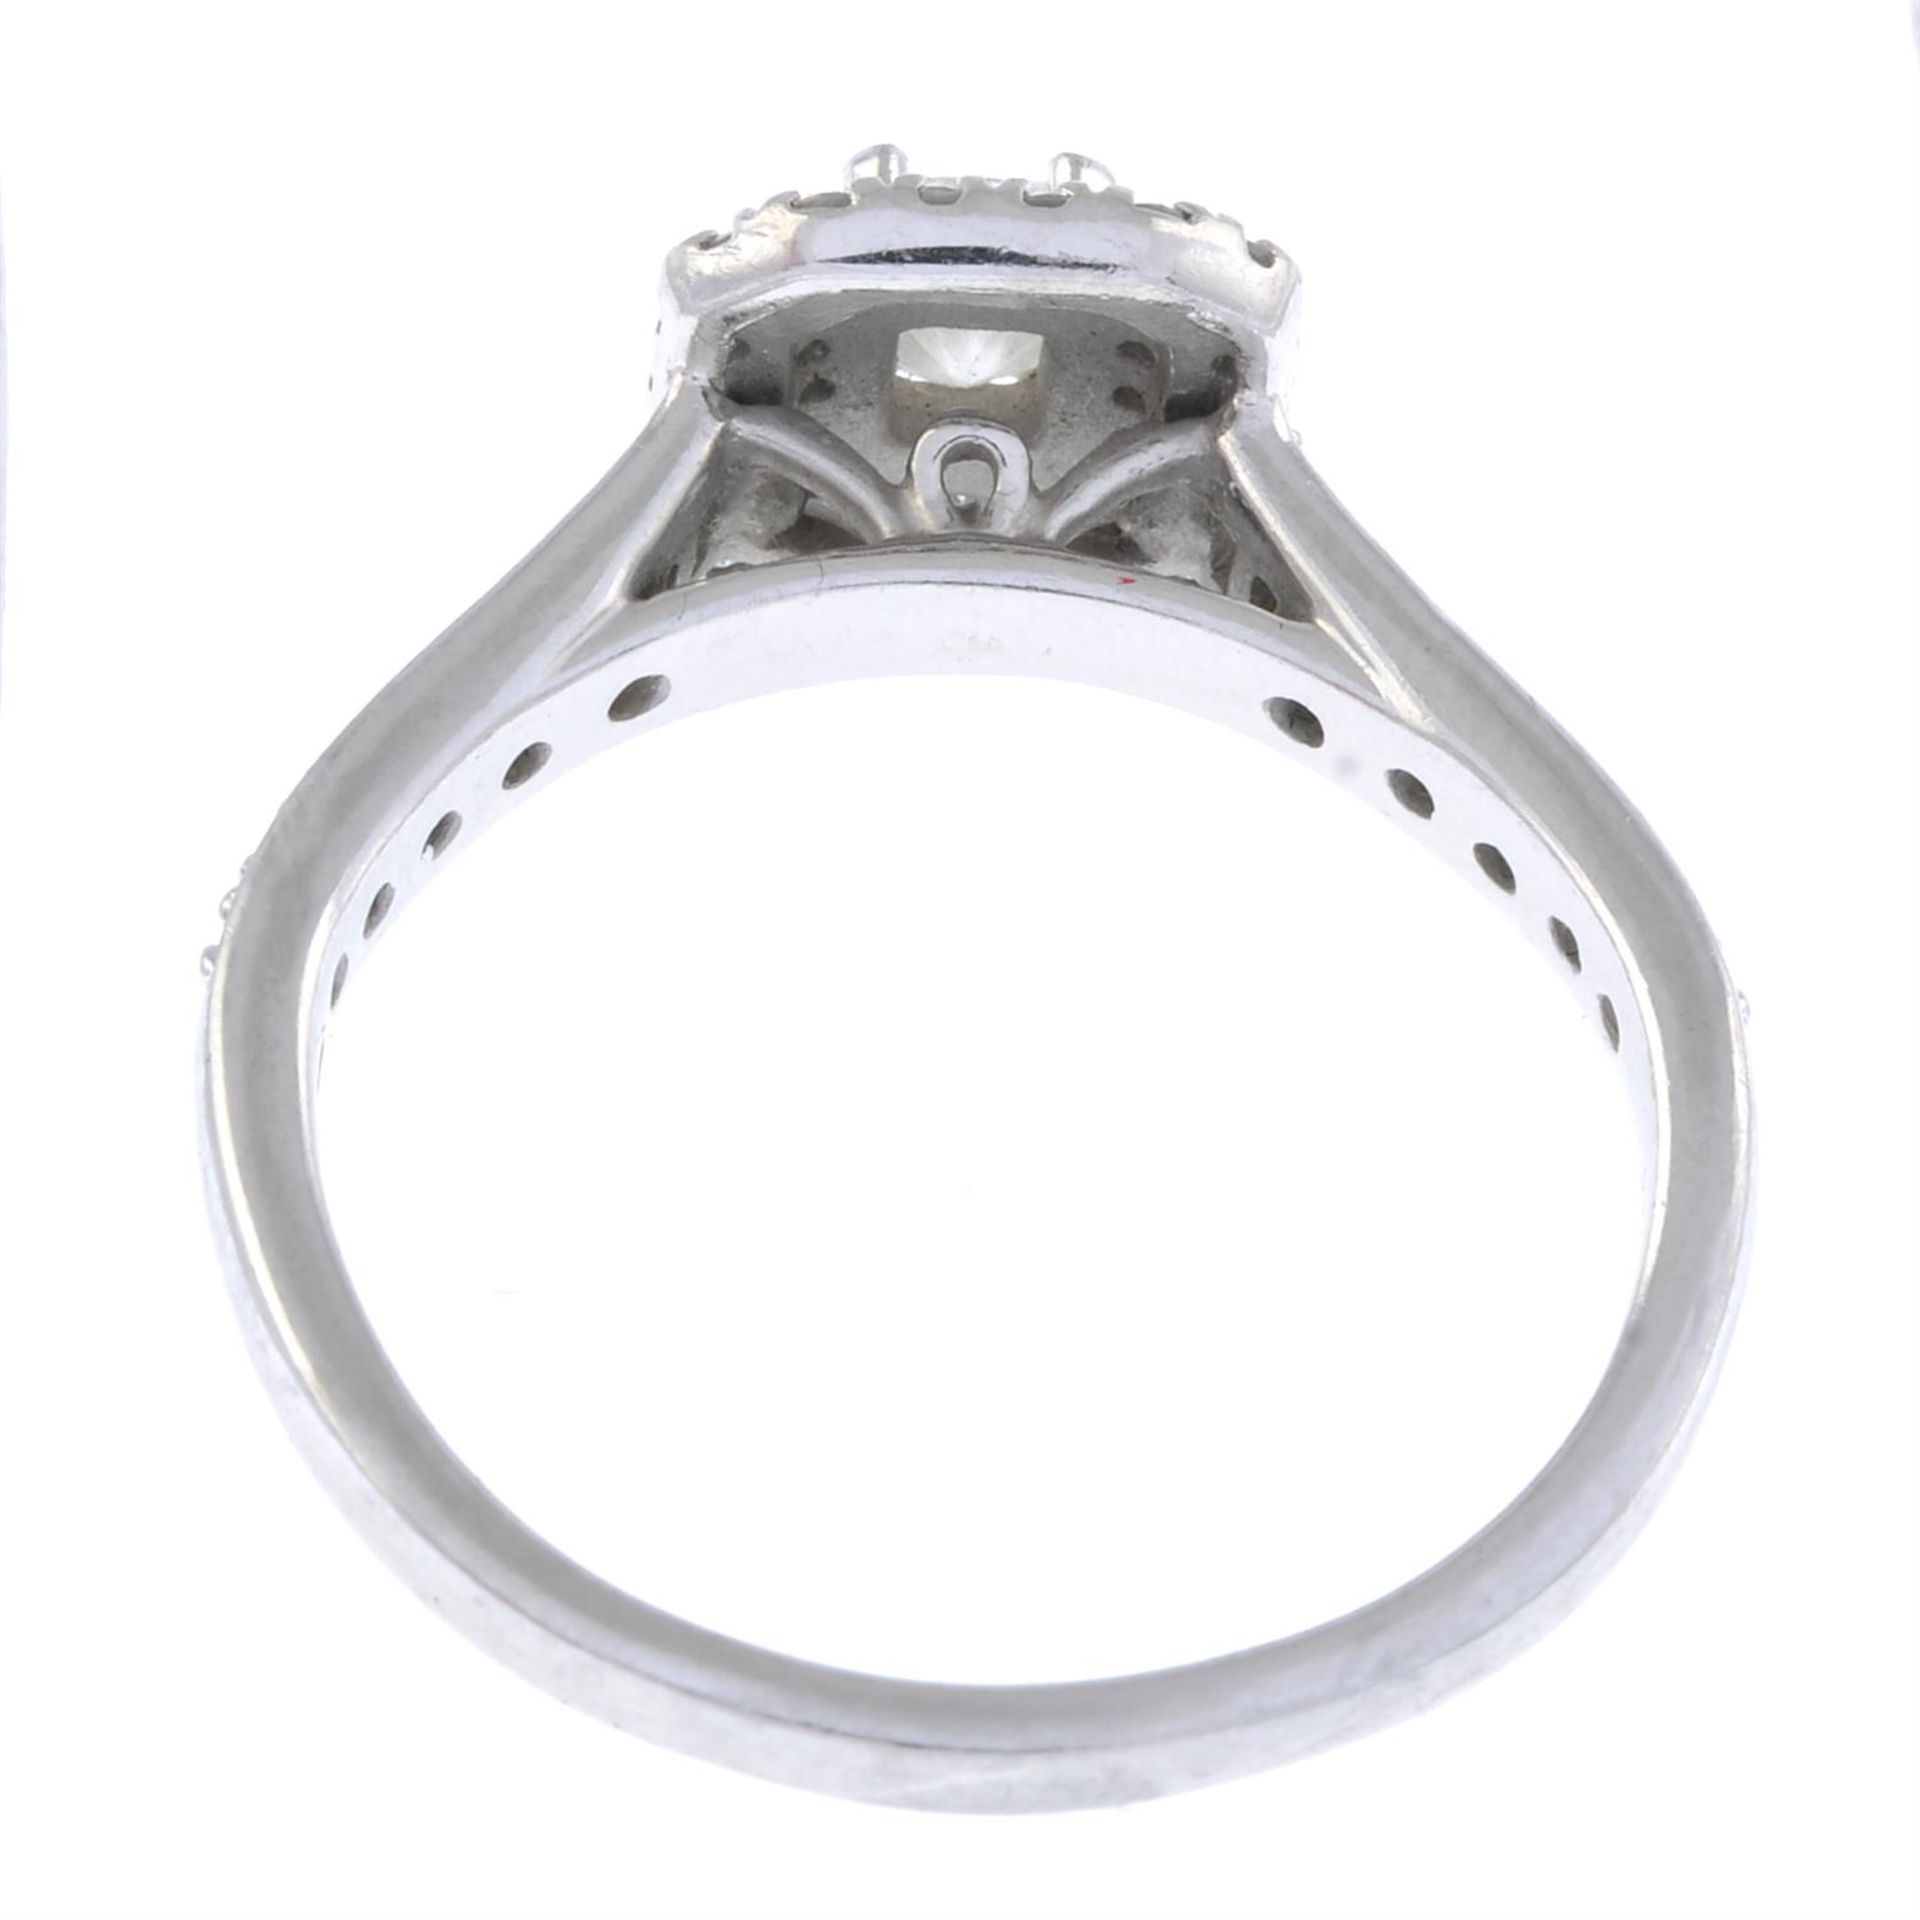 Platinum vari-cut diamond cluster ring - Image 2 of 2